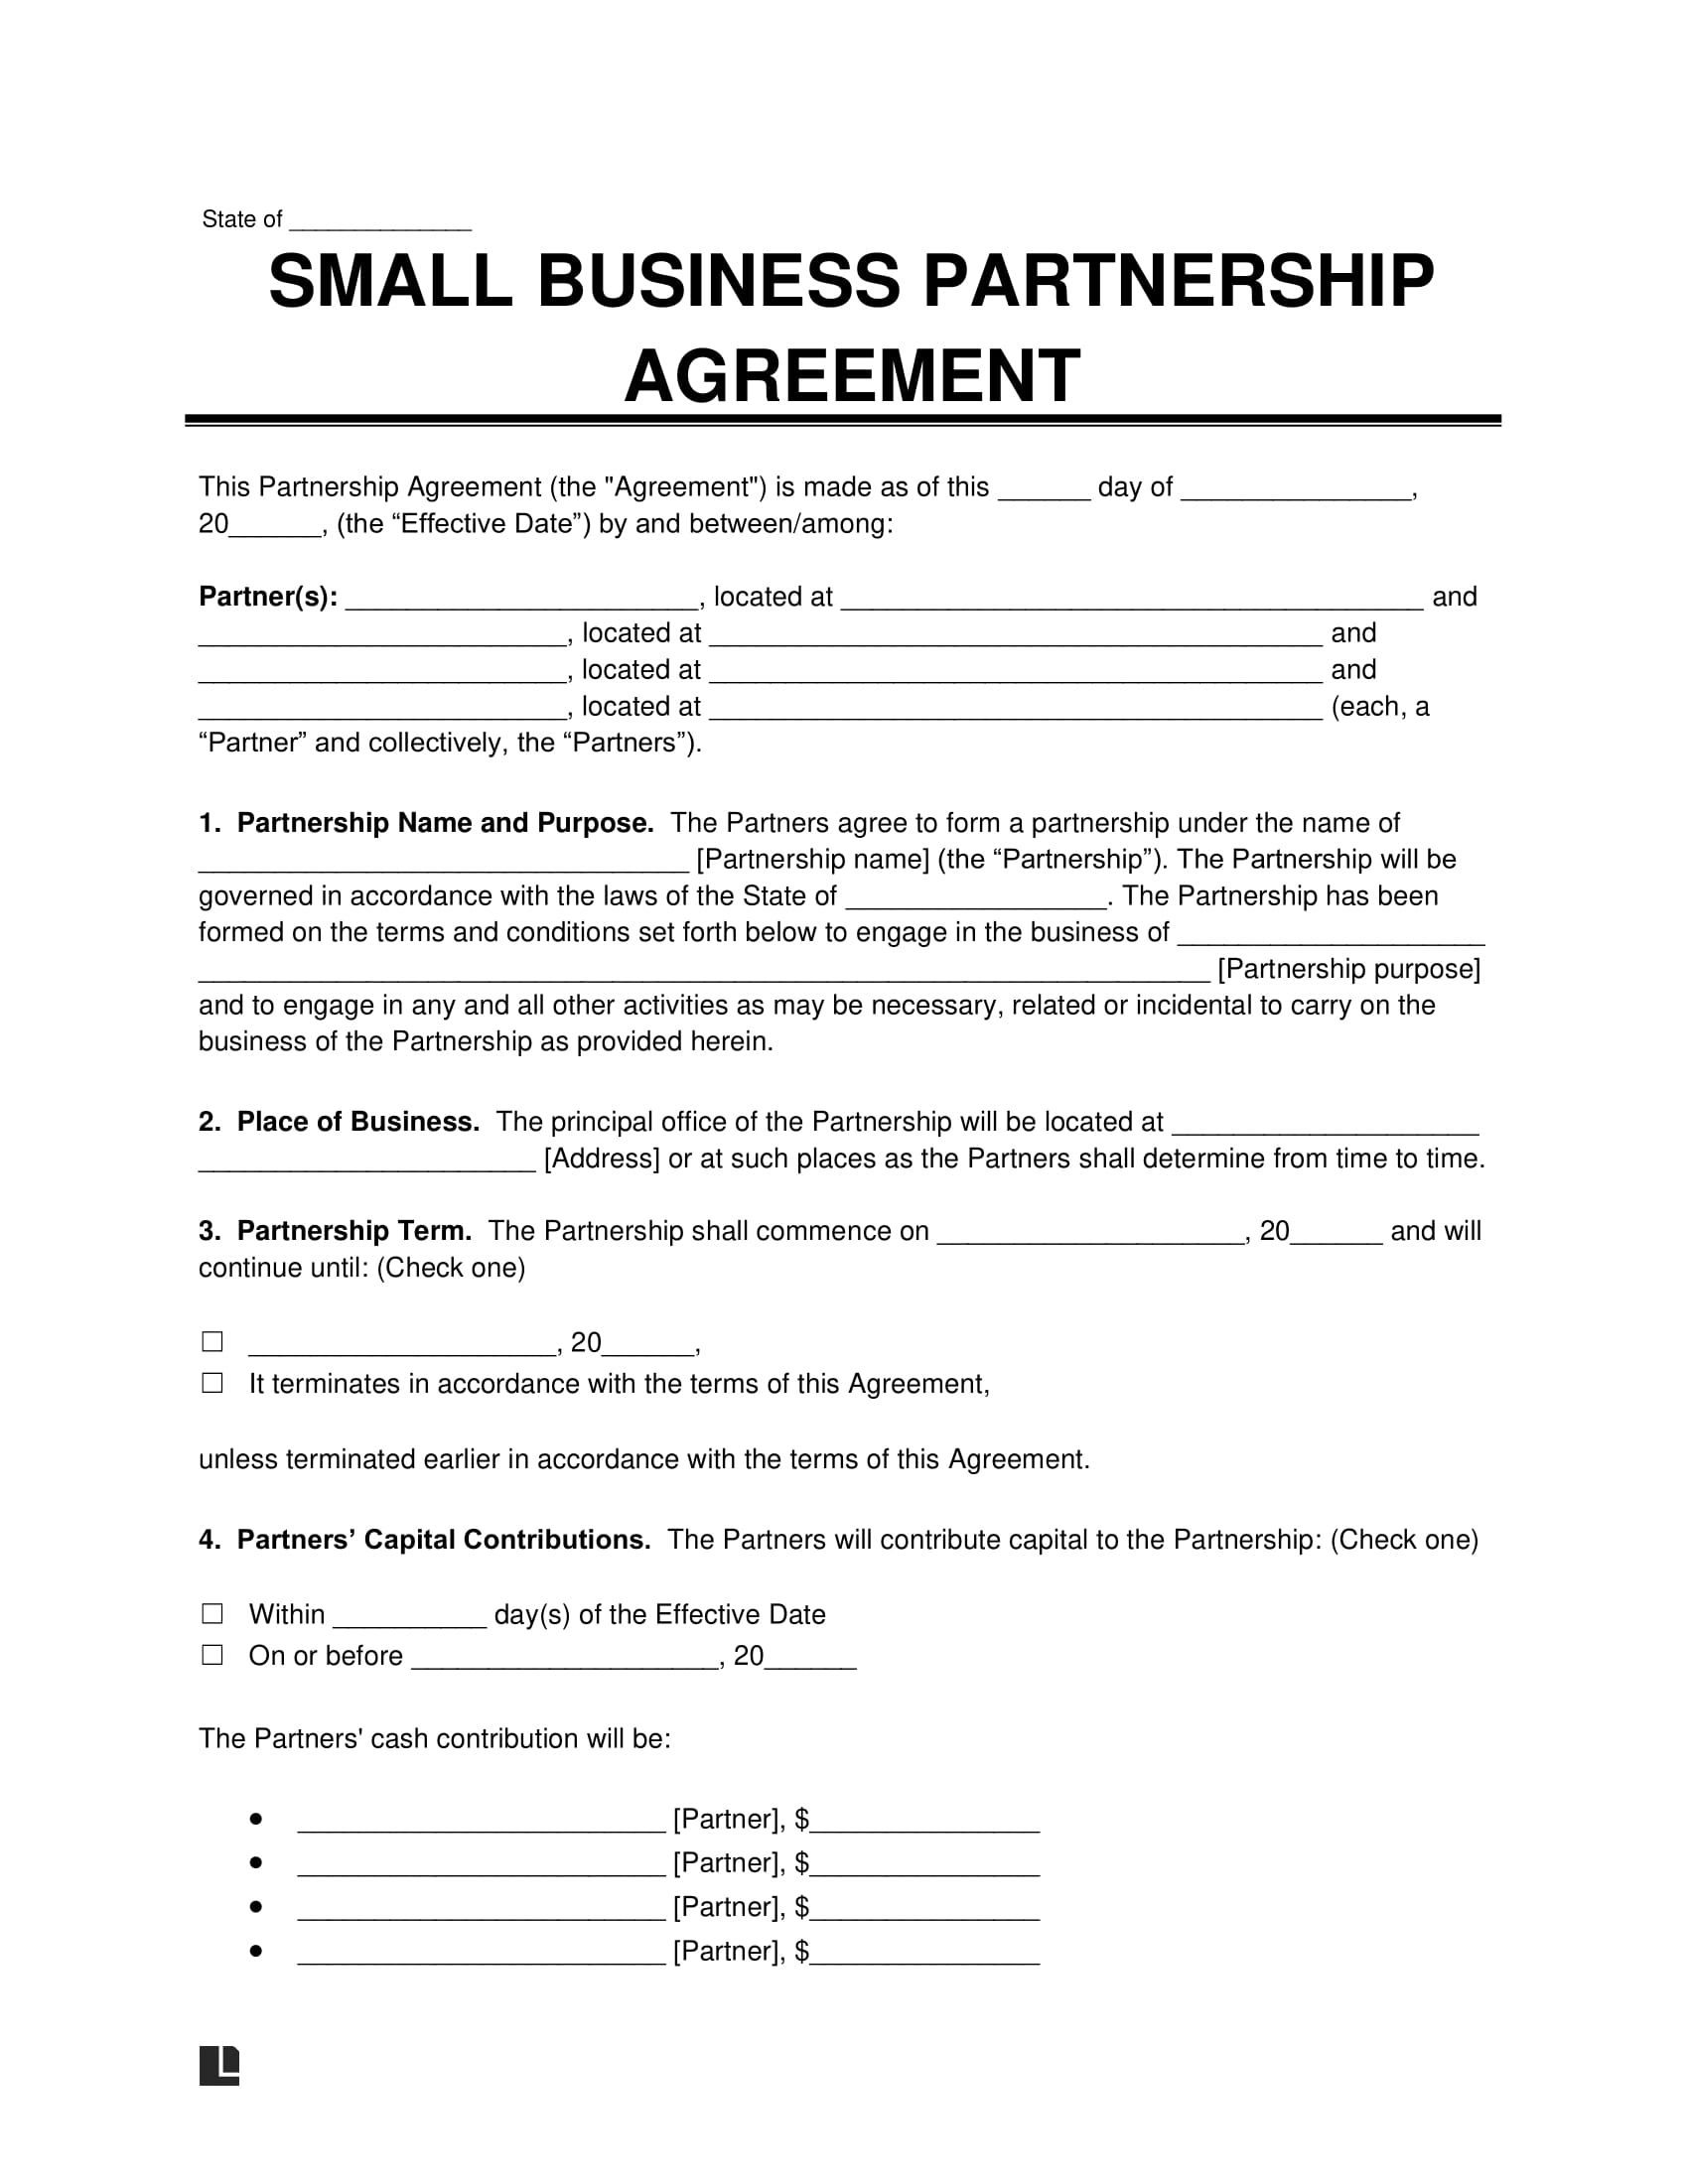 business plan for partner